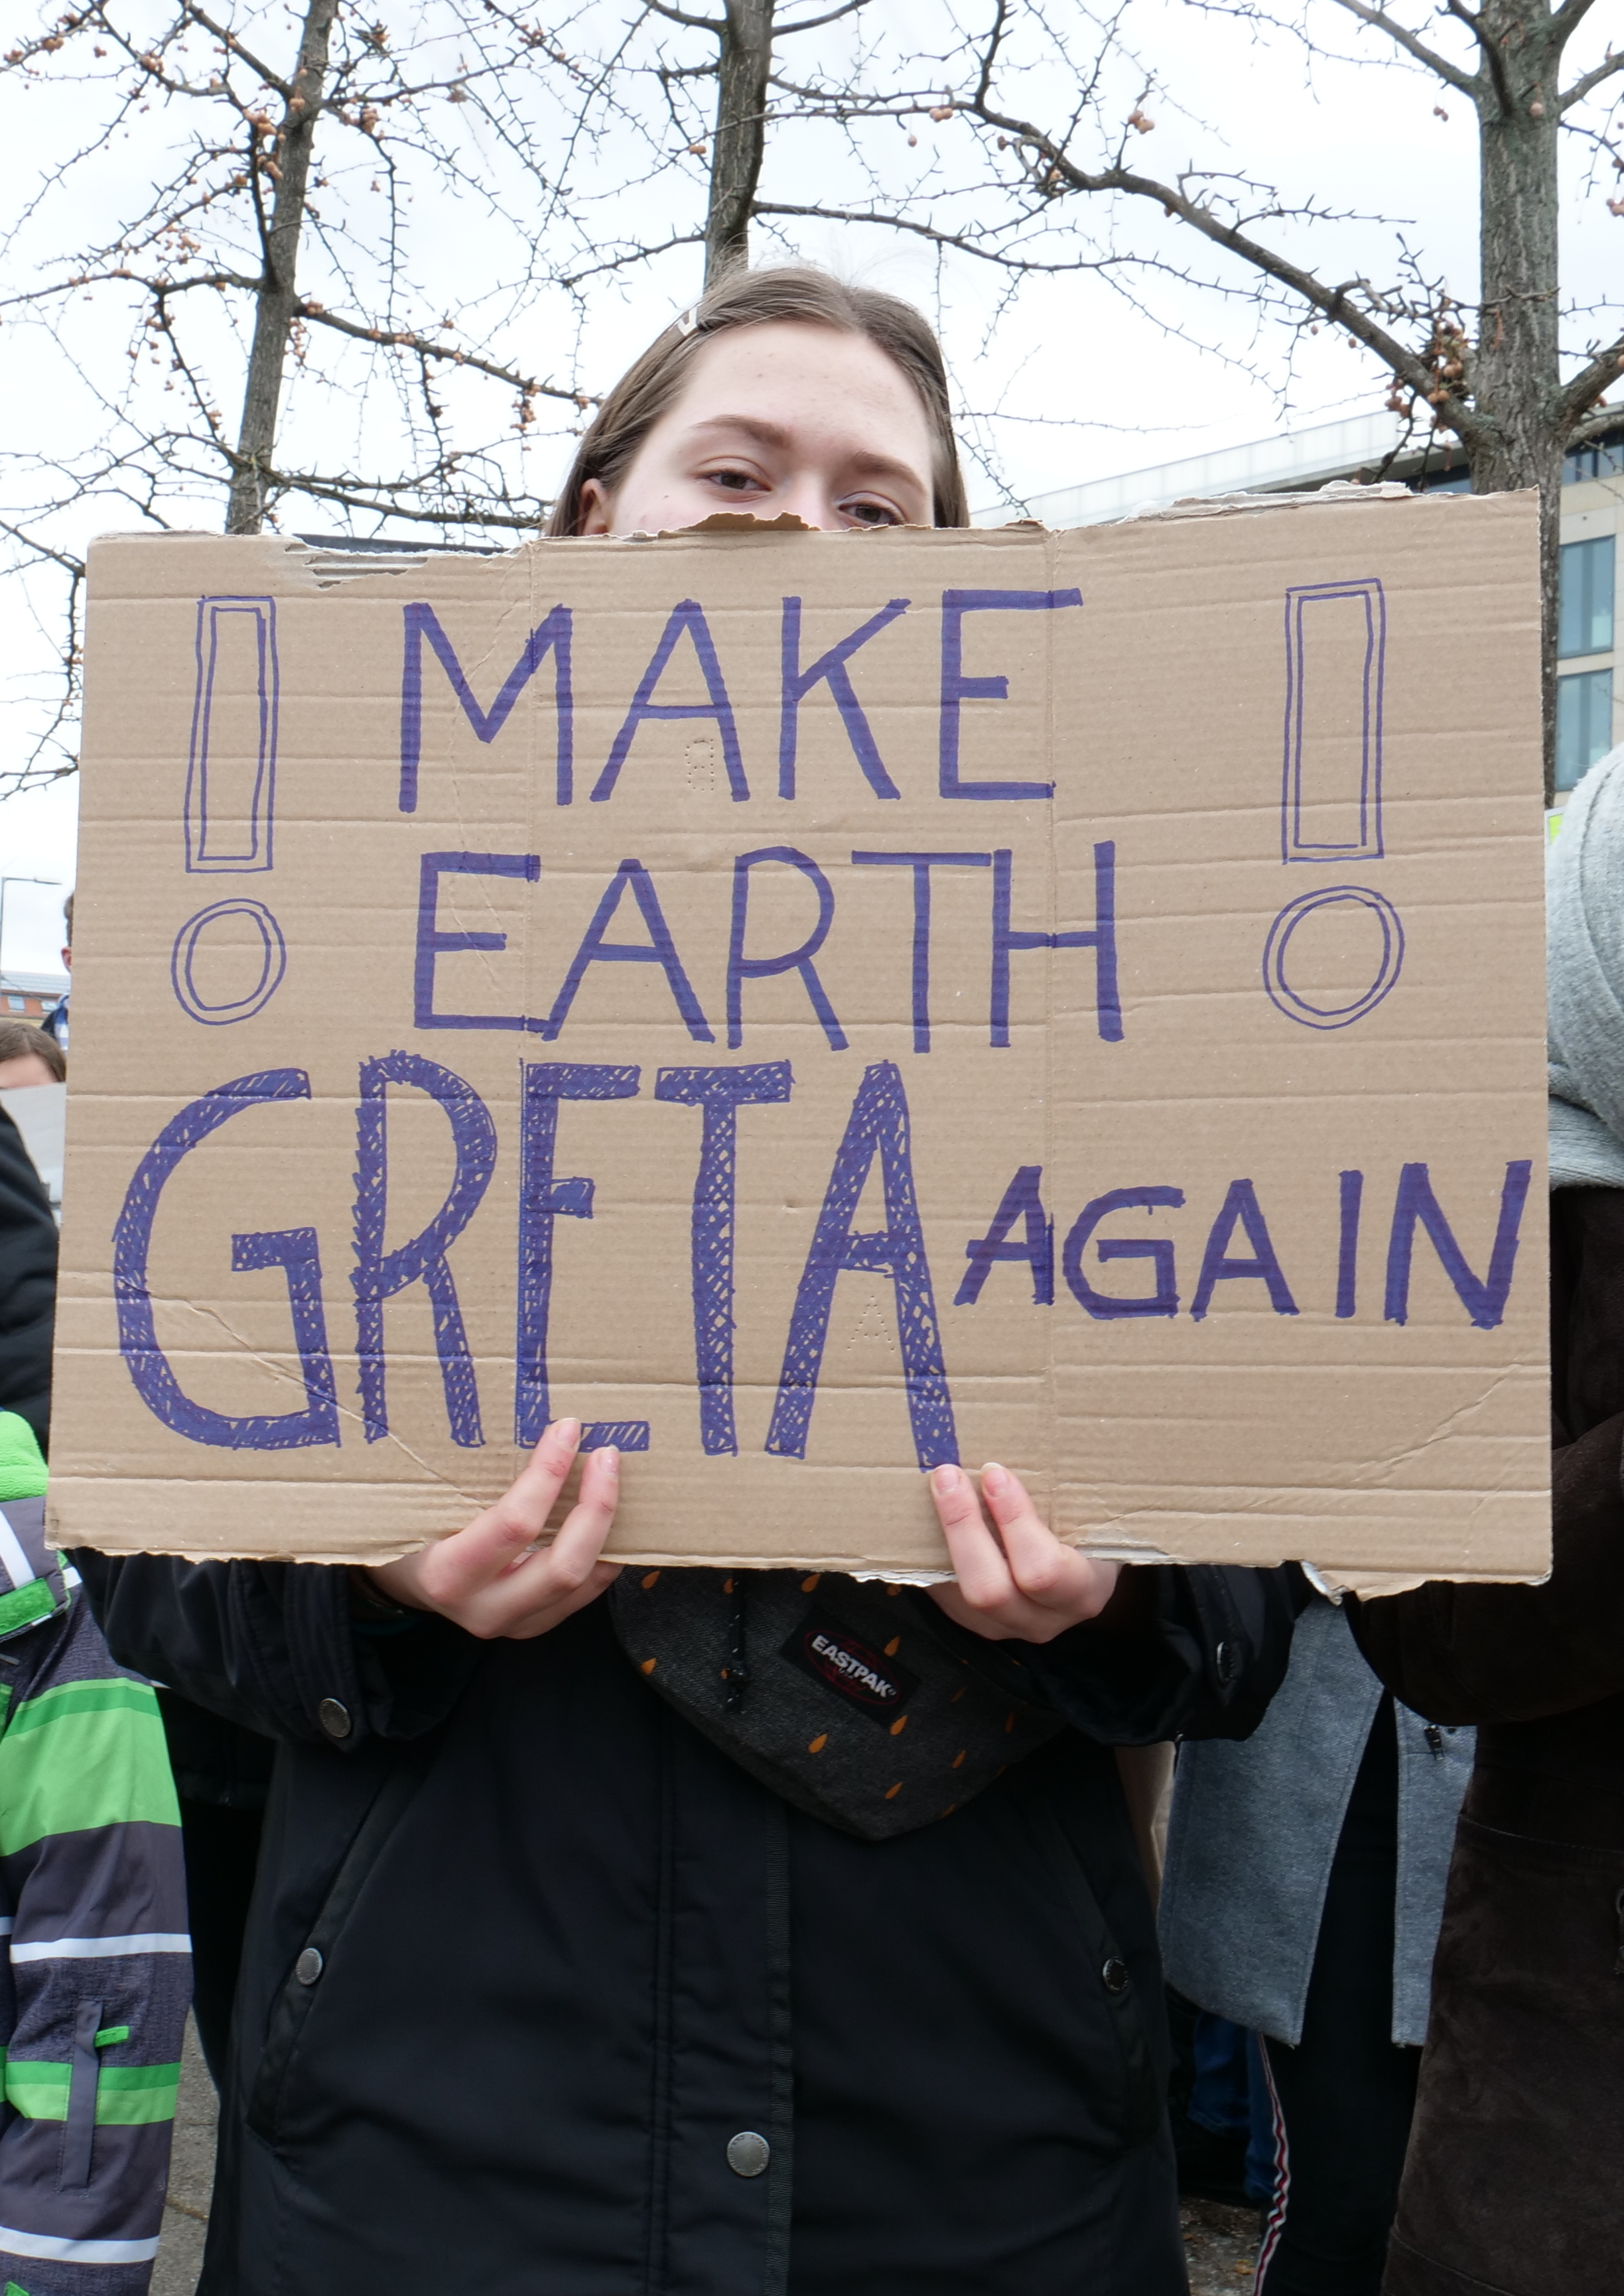 Make_the_Earth_Greta_again,_Berlin,_08.02.2019_(cropped)